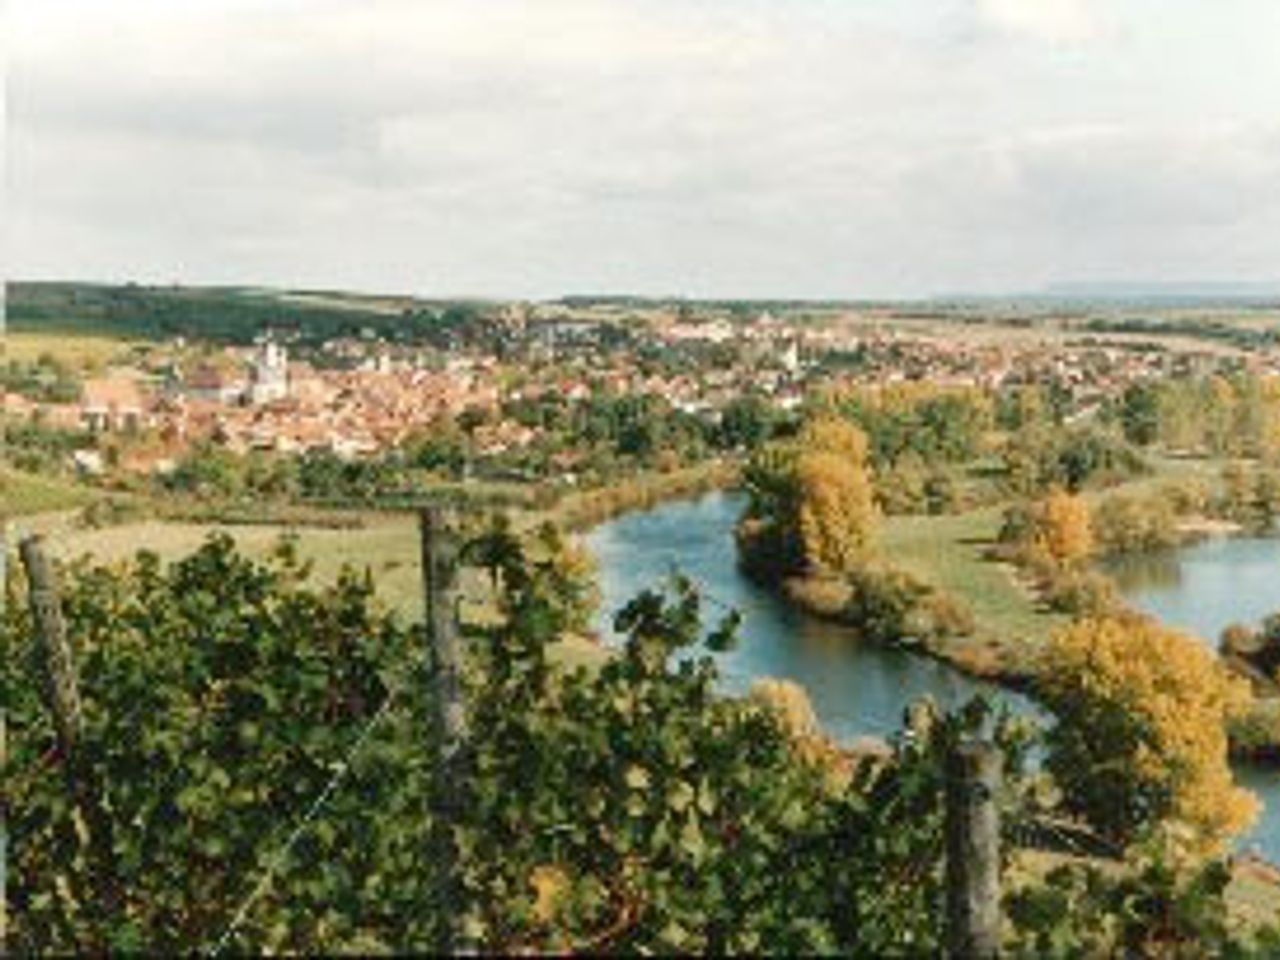 Fränkisches Weinland und Würzburg Special